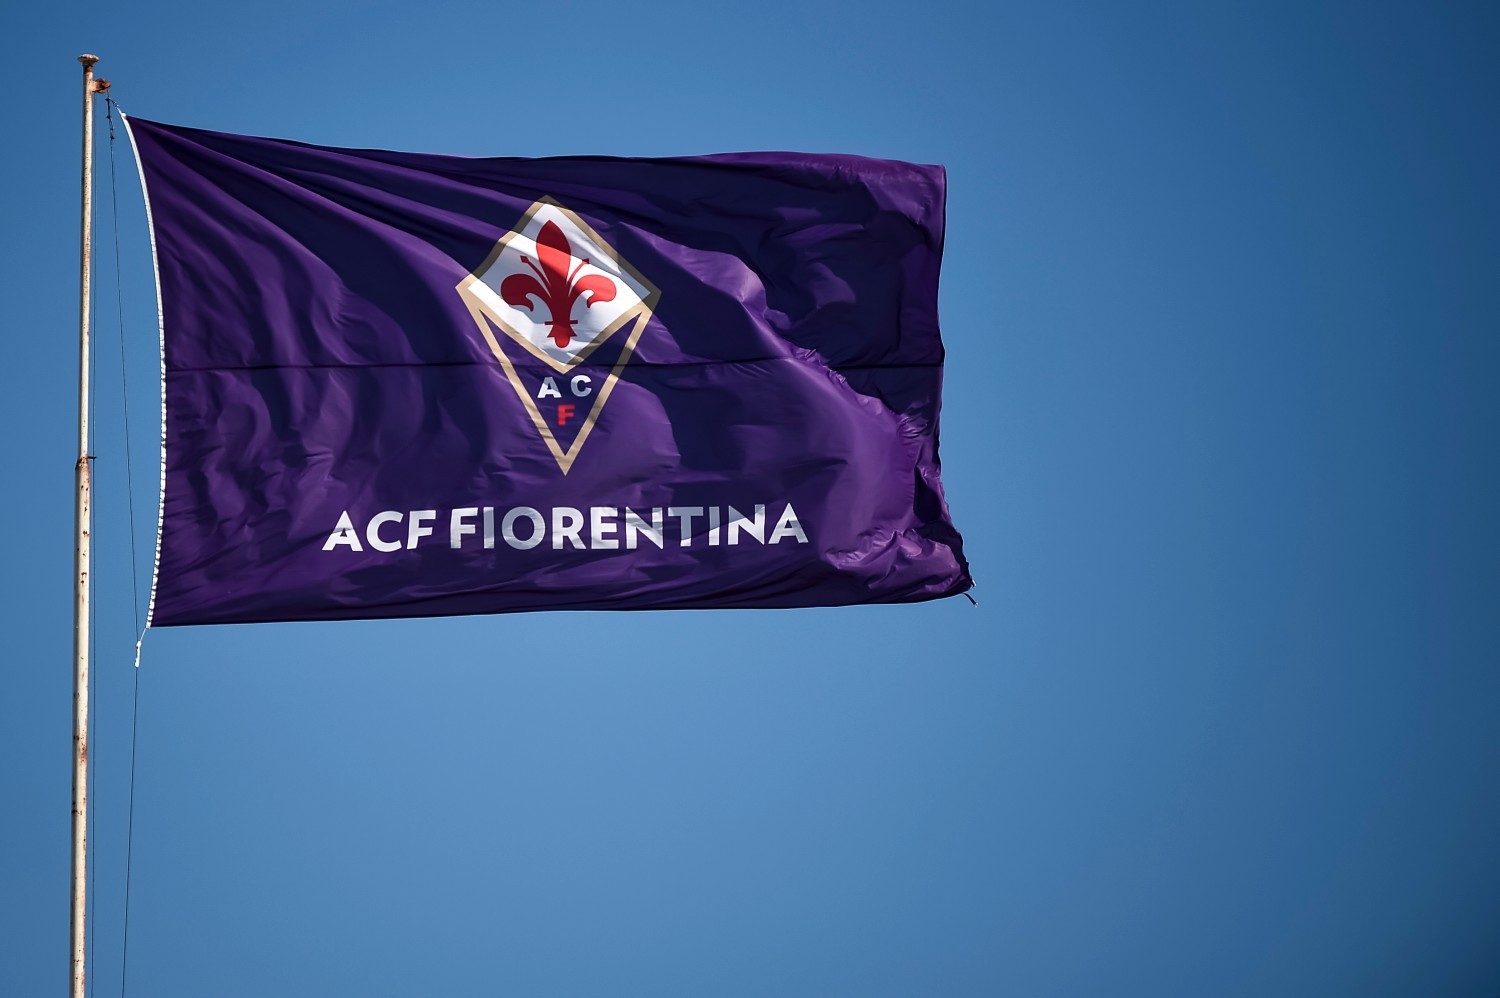 Fiorentina ogłosiła nazwisko nowego trenera po krótkim romansie z Gennaro Gattuso [OFICJALNIE]